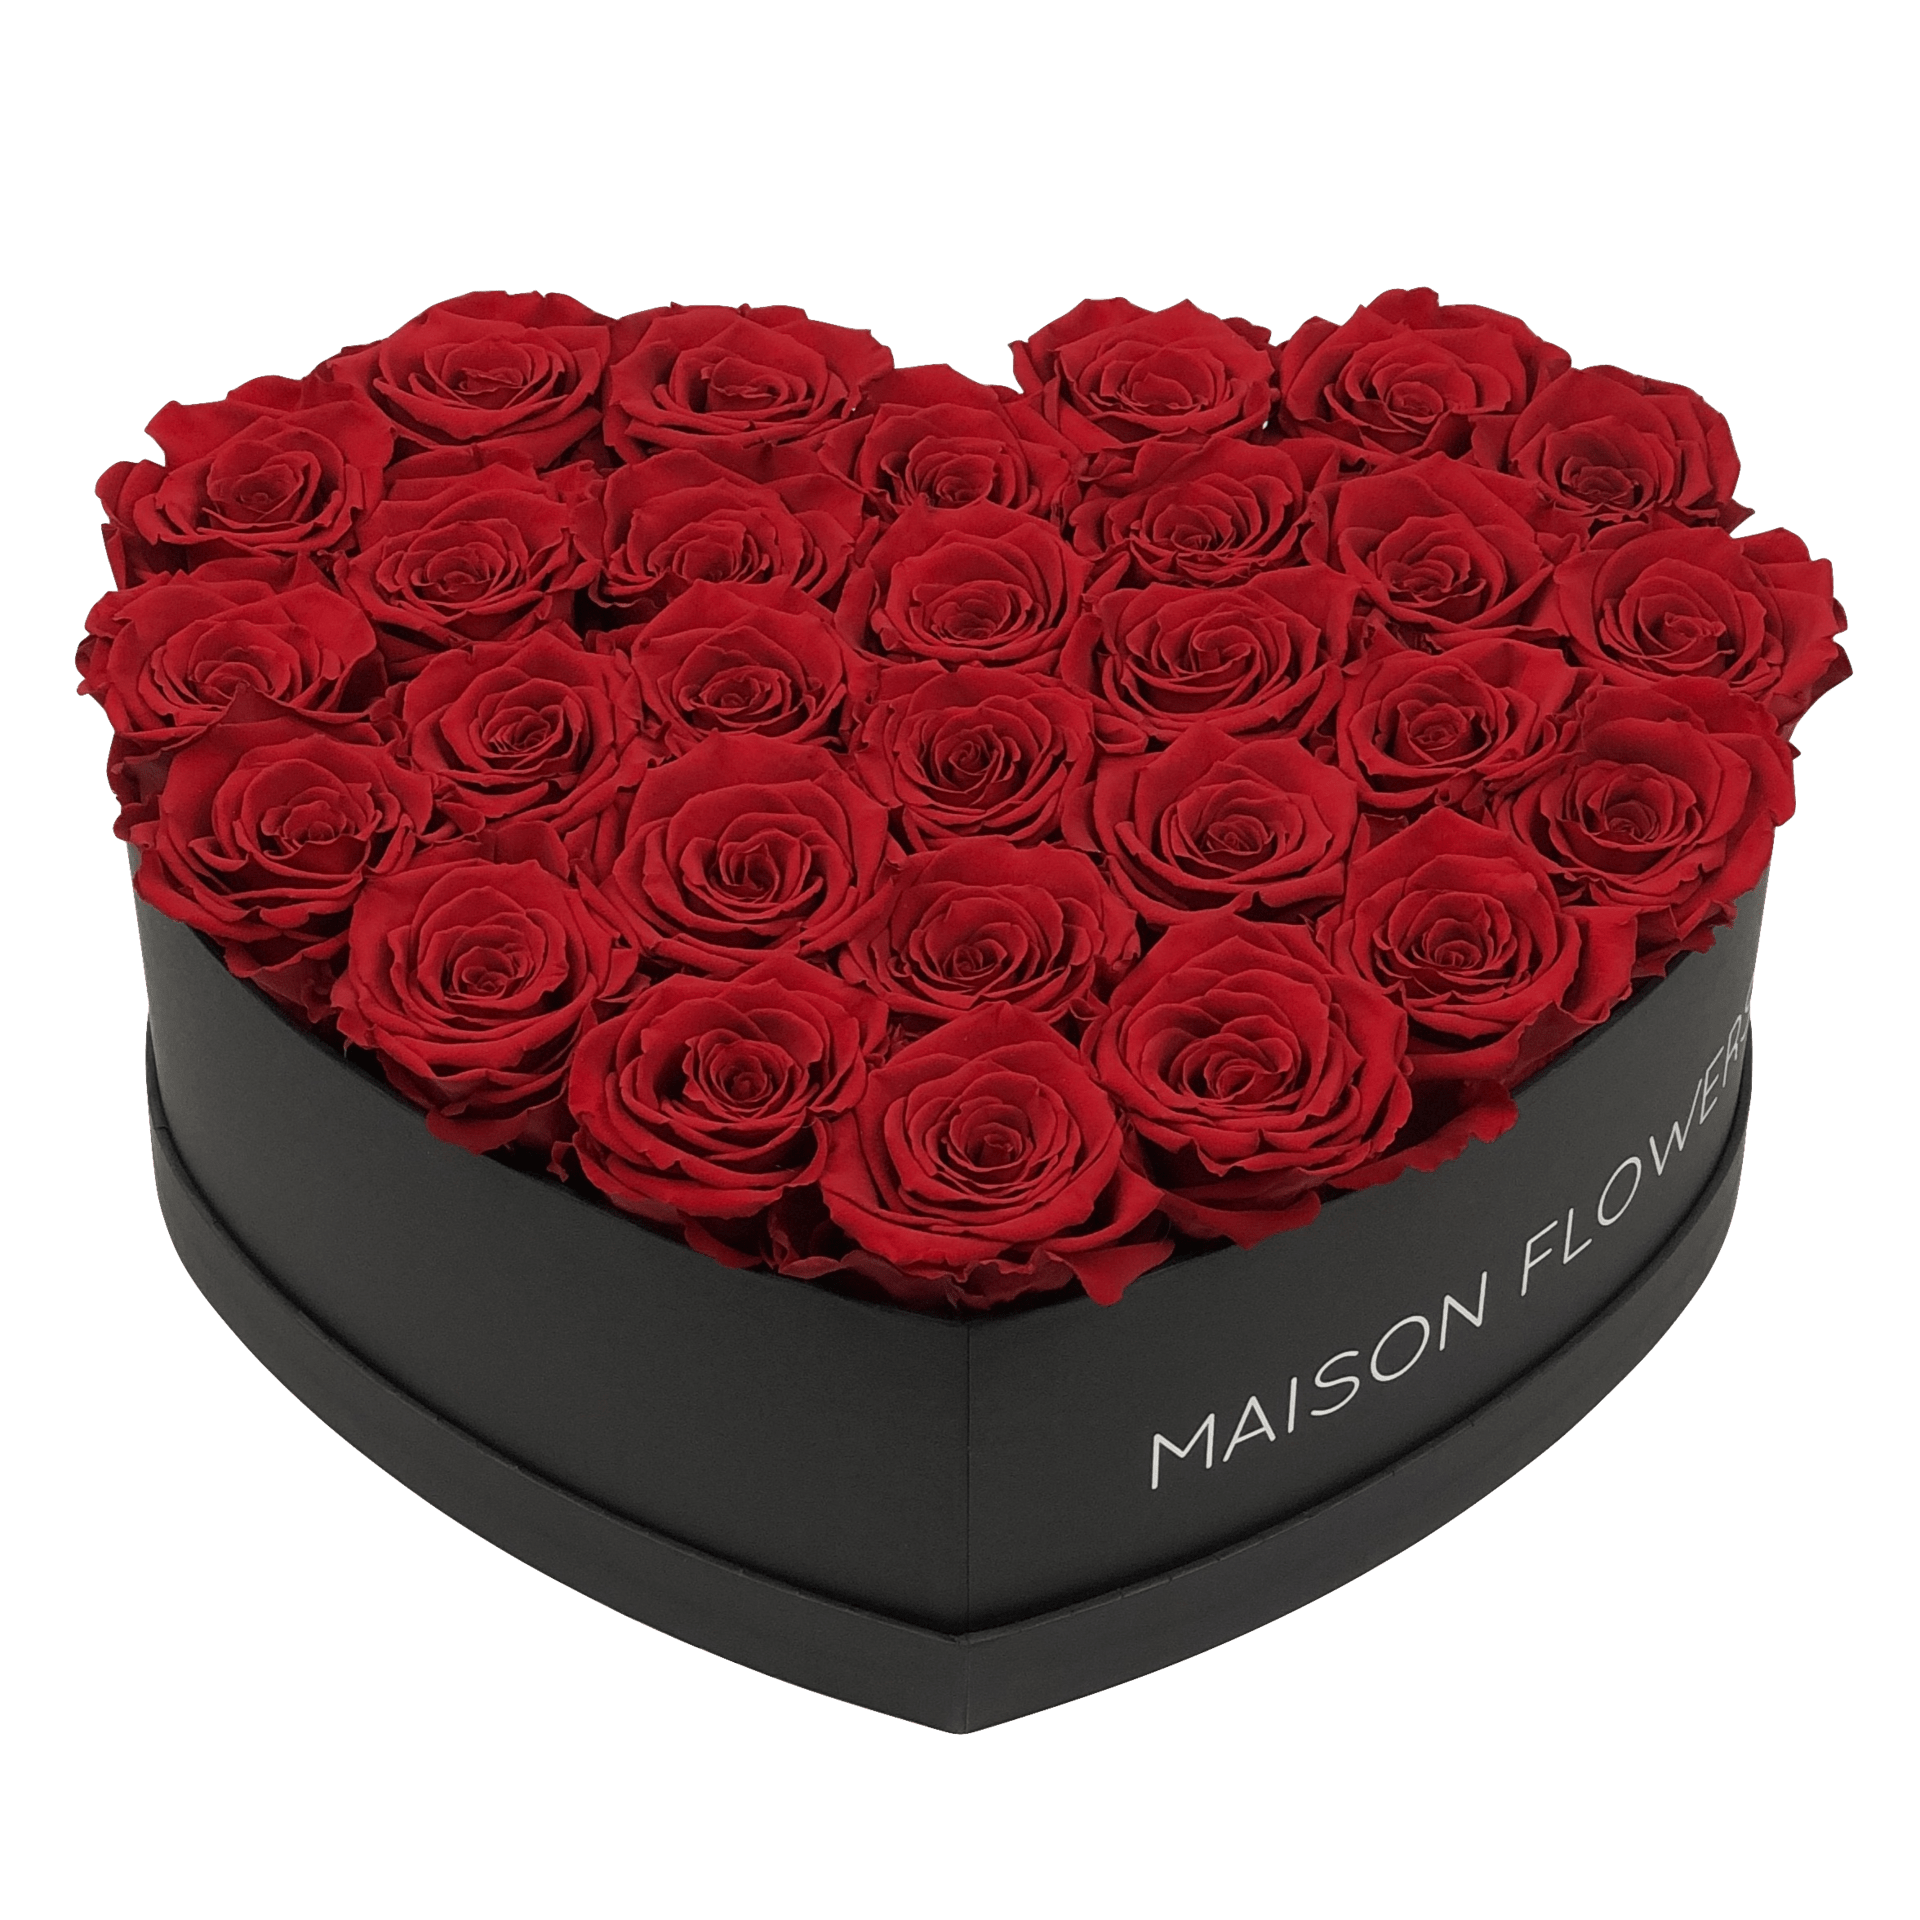 symbool Huiswerk maken Peru Luxe flowerboxen met verse en longlife rozen – Maison Flowers